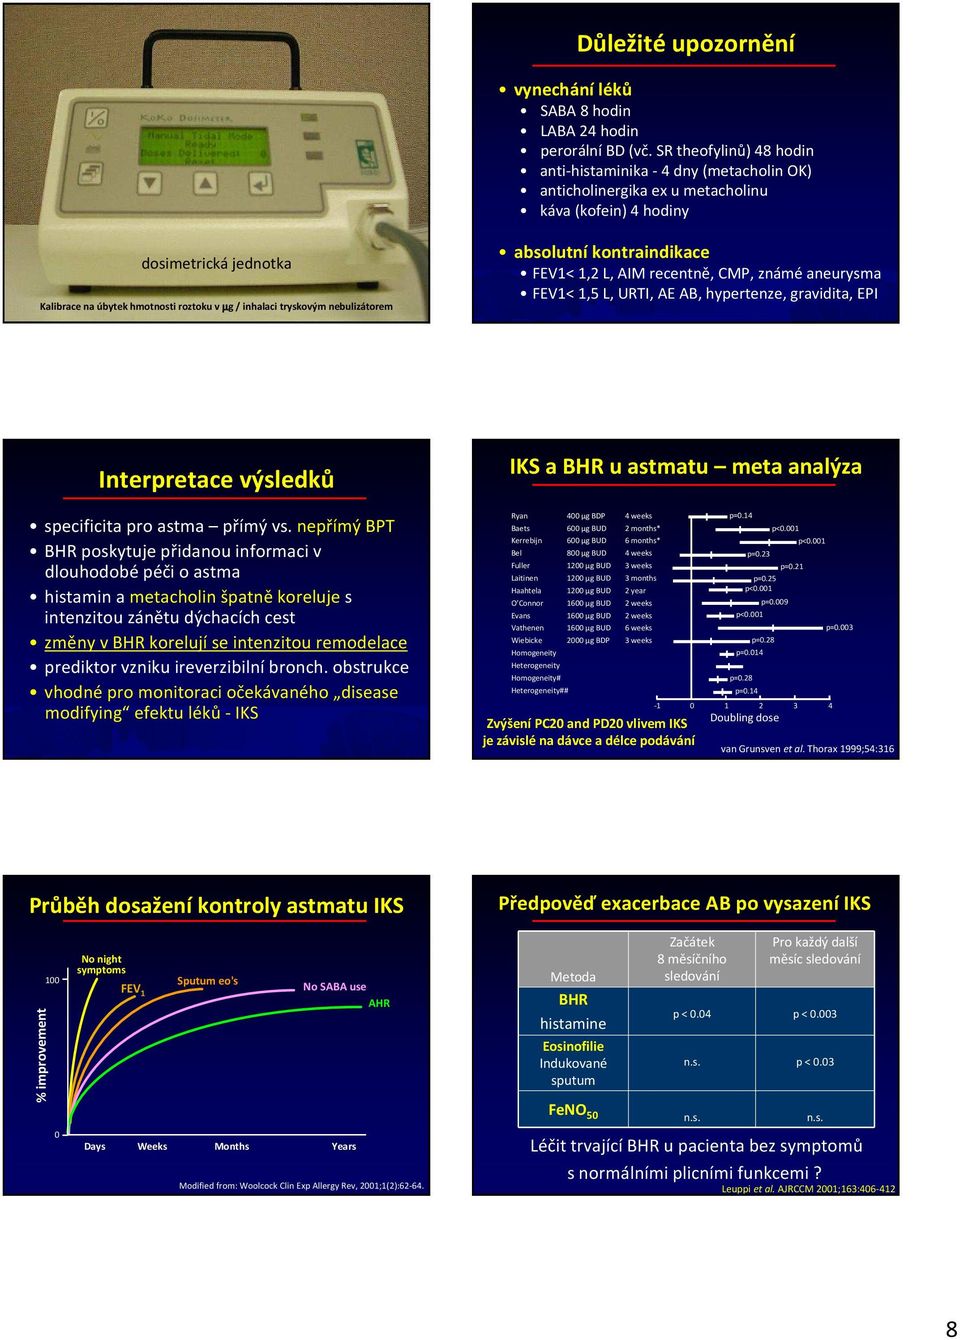 tryskovým nebulizátorem absolutní kontraindikace FEV1< 1,2 L, AIM recentně, CMP, známé aneurysma FEV1<1,5 L, URTI, AE AB, hypertenze, gravidita, EPI Interpretace výsledků specificitapro astma přímý